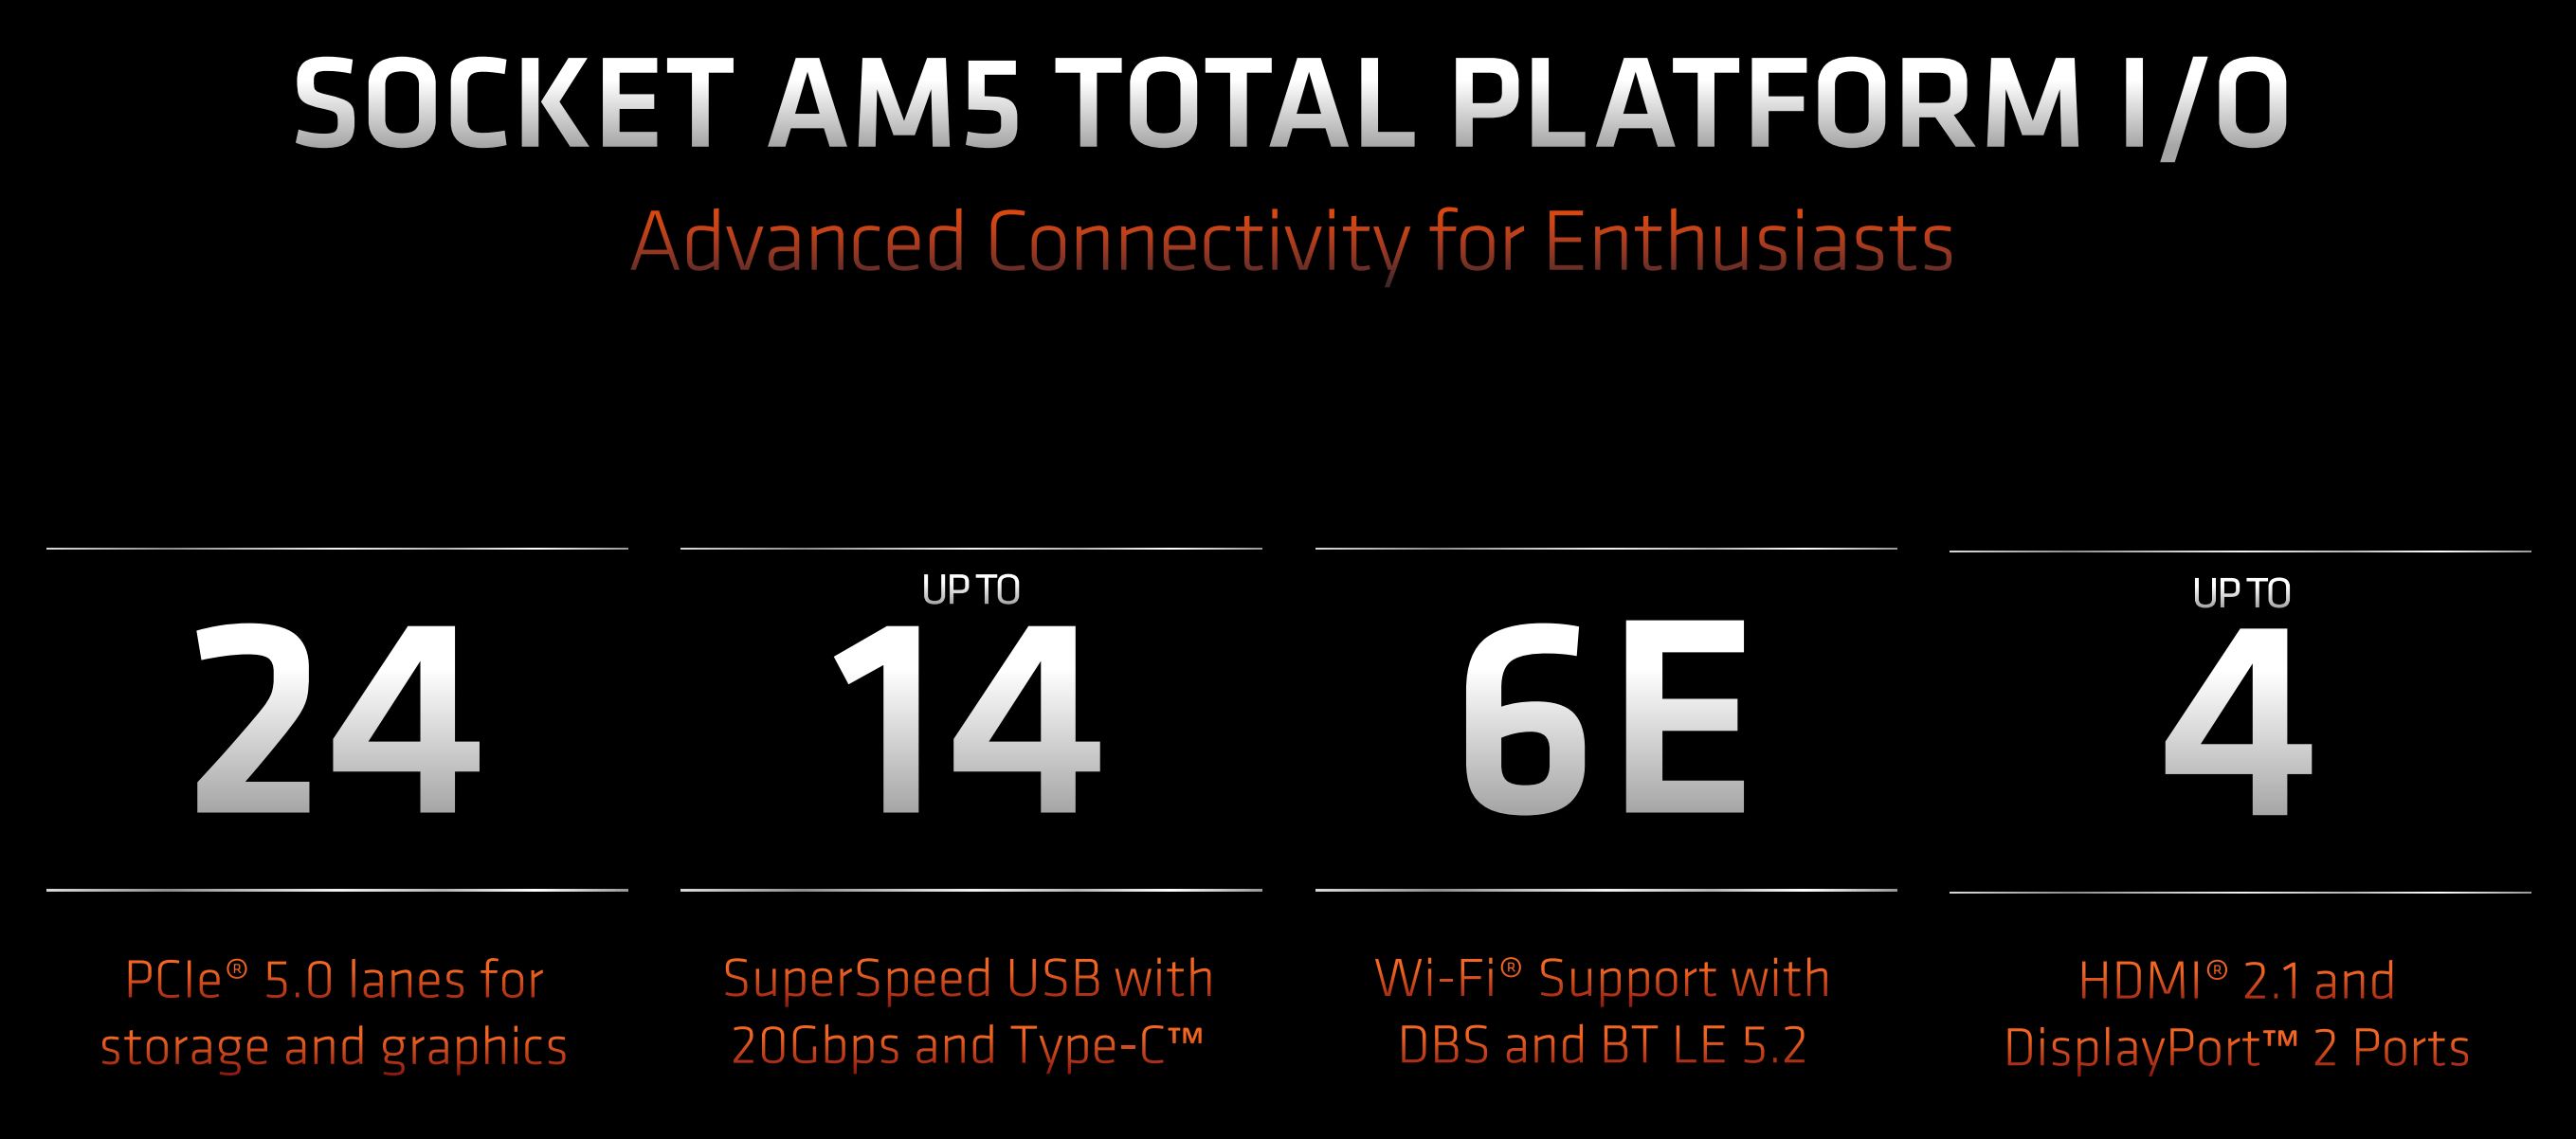 AMD Ryzen 7000 – AM5